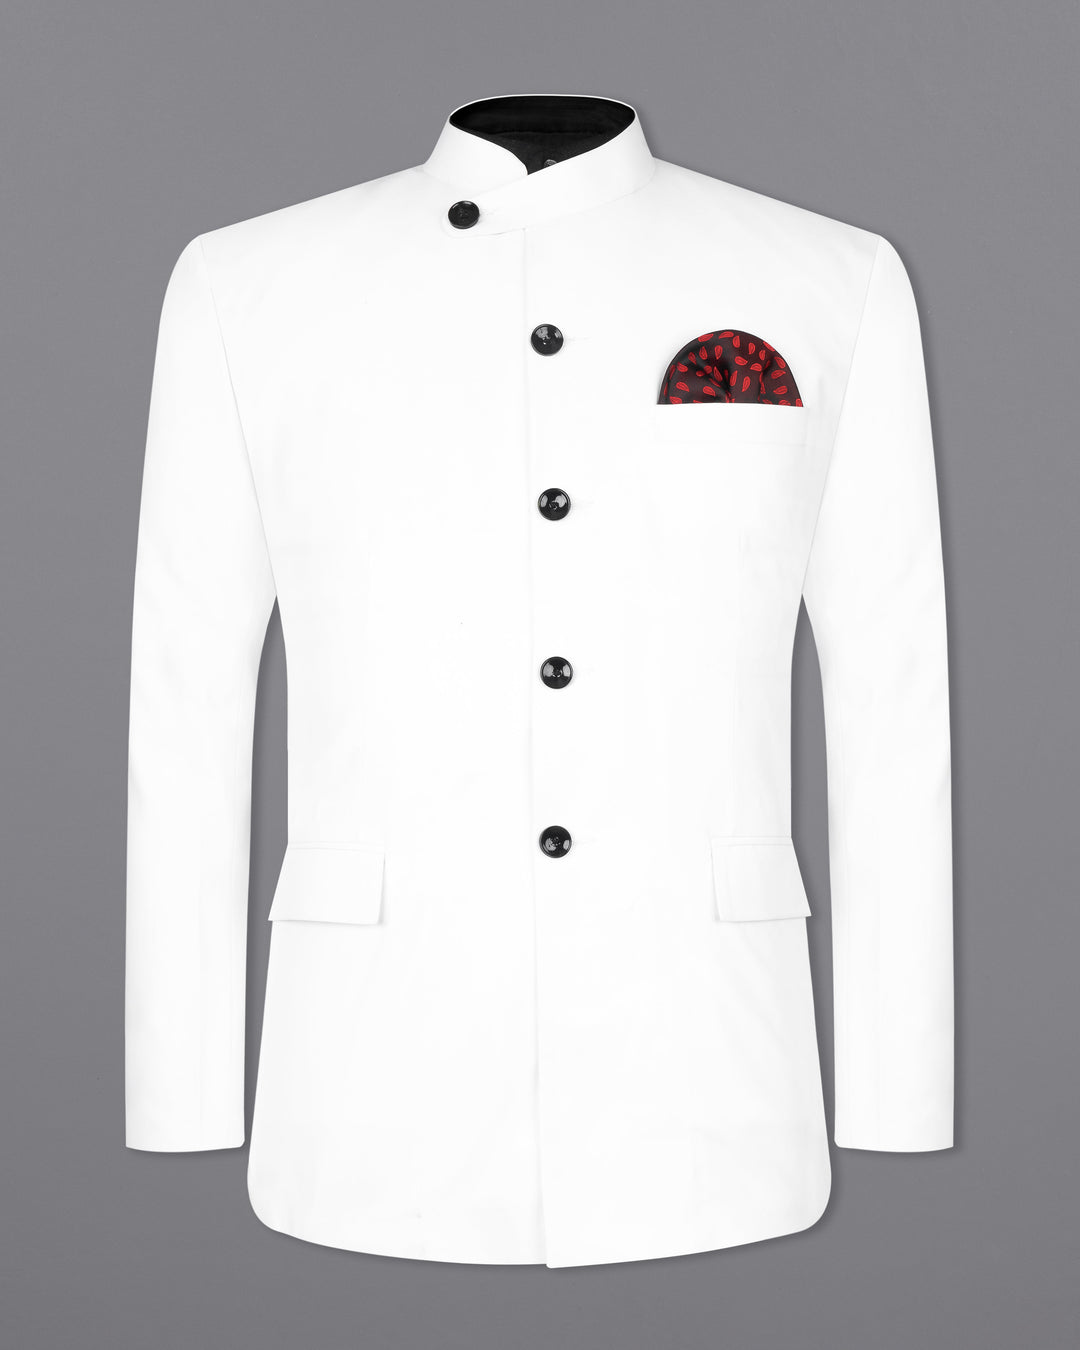 White Mandarin Suit For Men